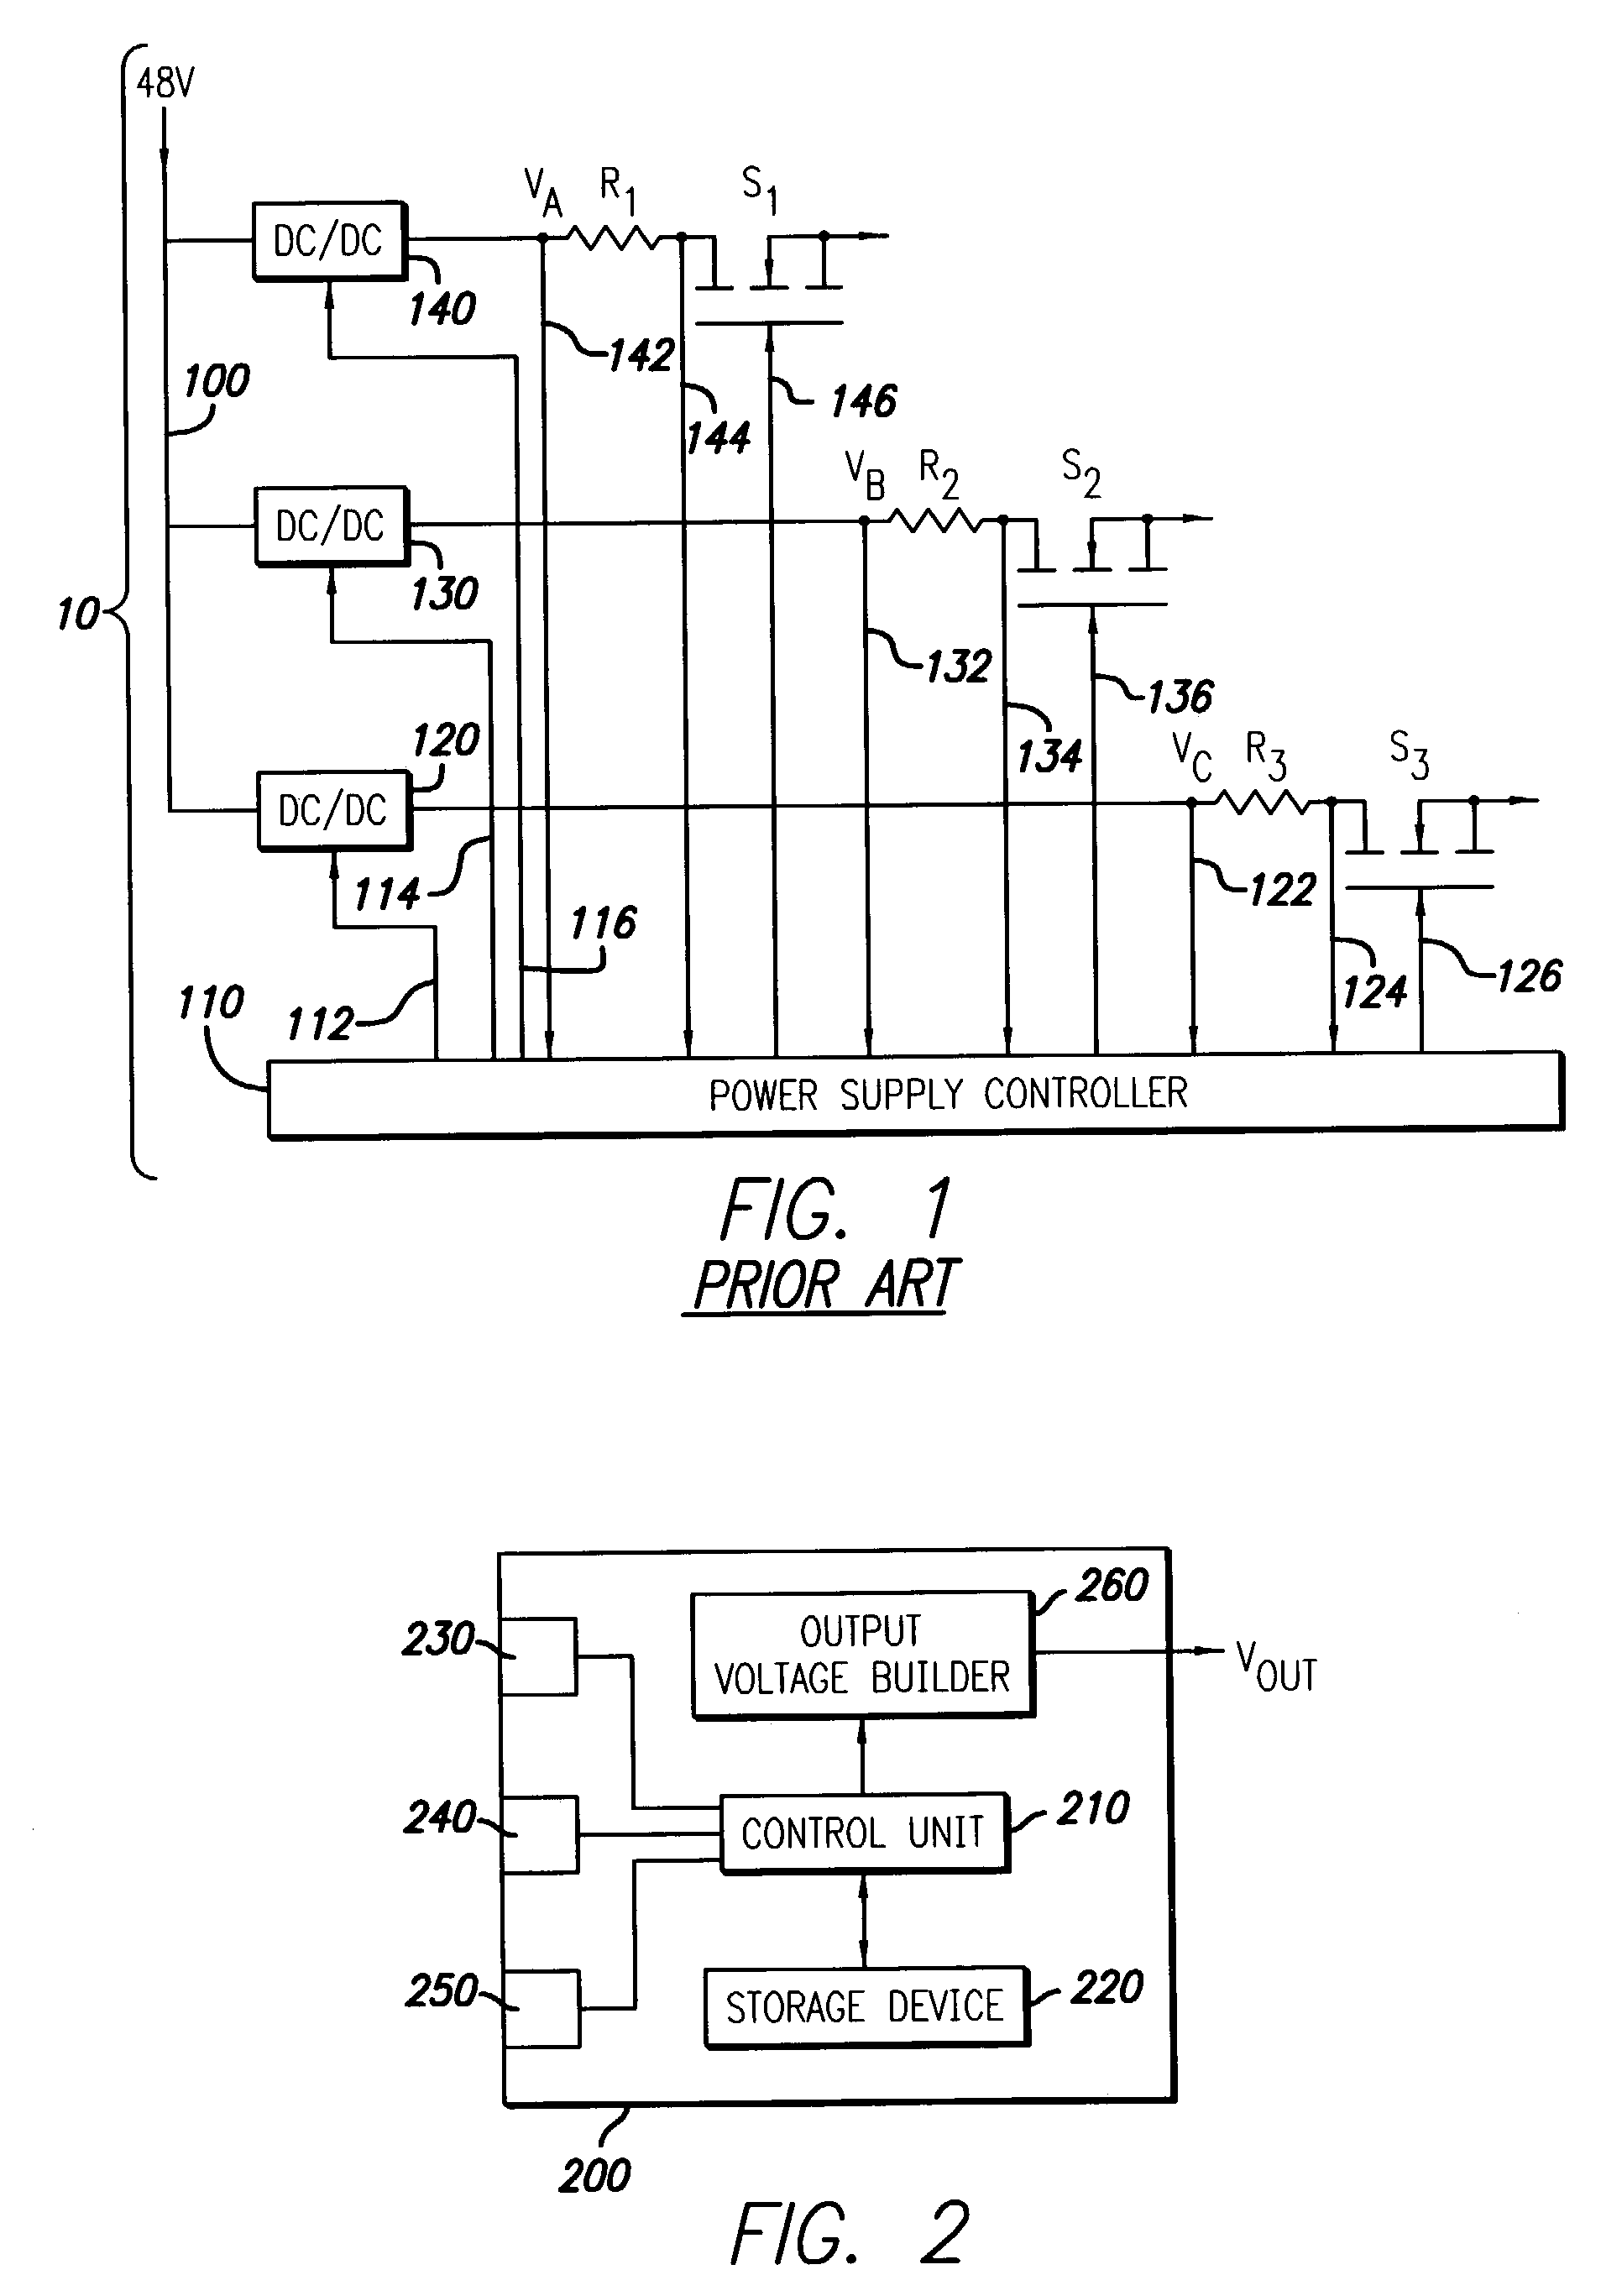 Voltage set point control scheme